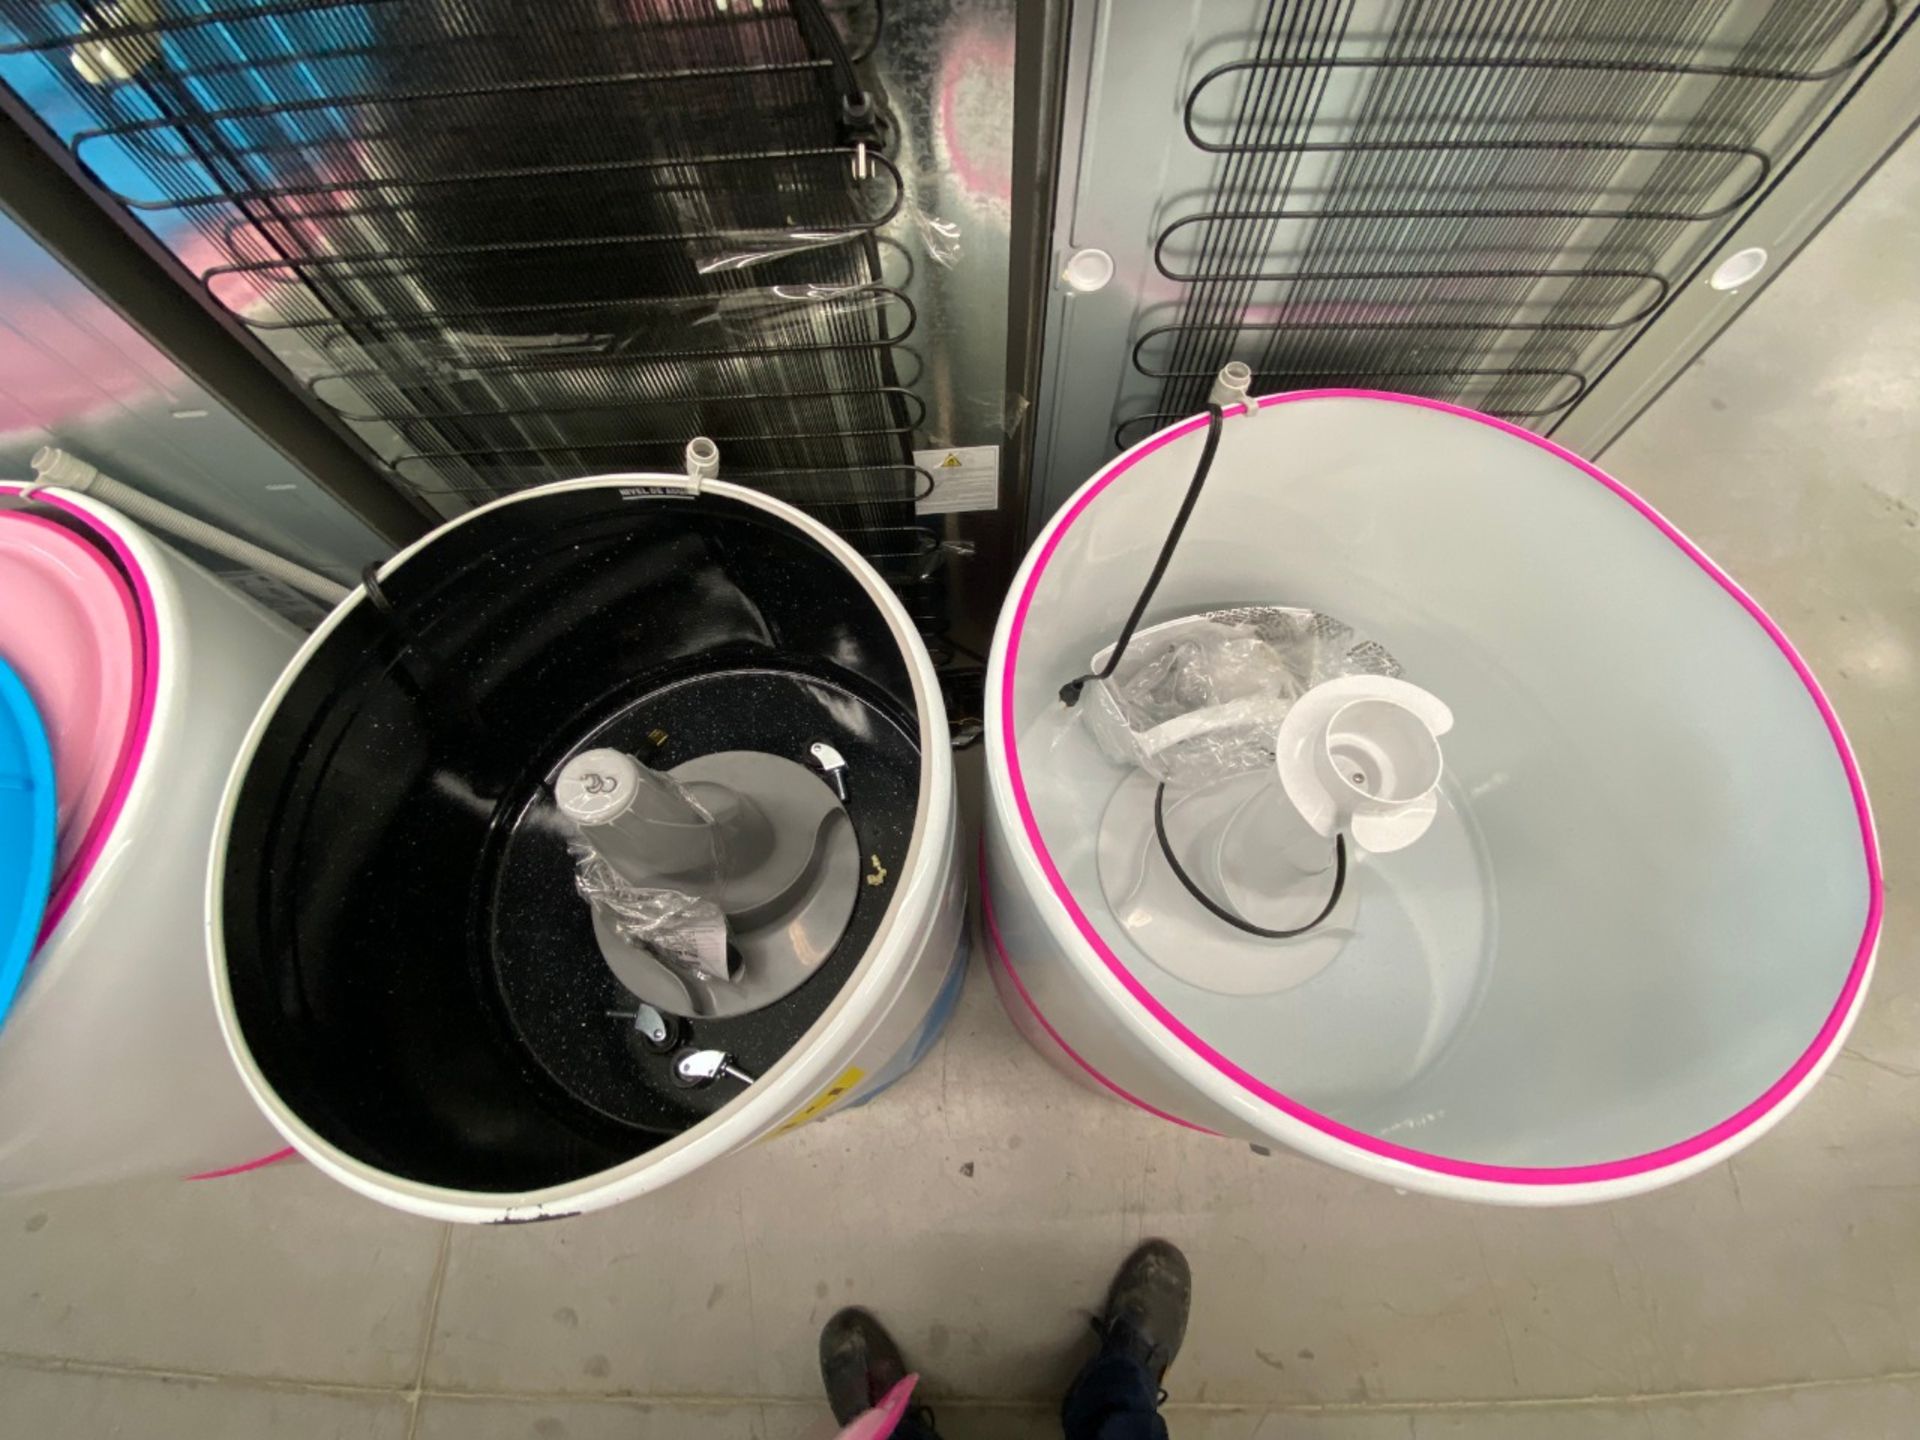 Lote conformado por 2 lavadoras: 1 Lavadora de 14 KG, Marca Koblenz, Modelo LRKW14B - Image 6 of 9